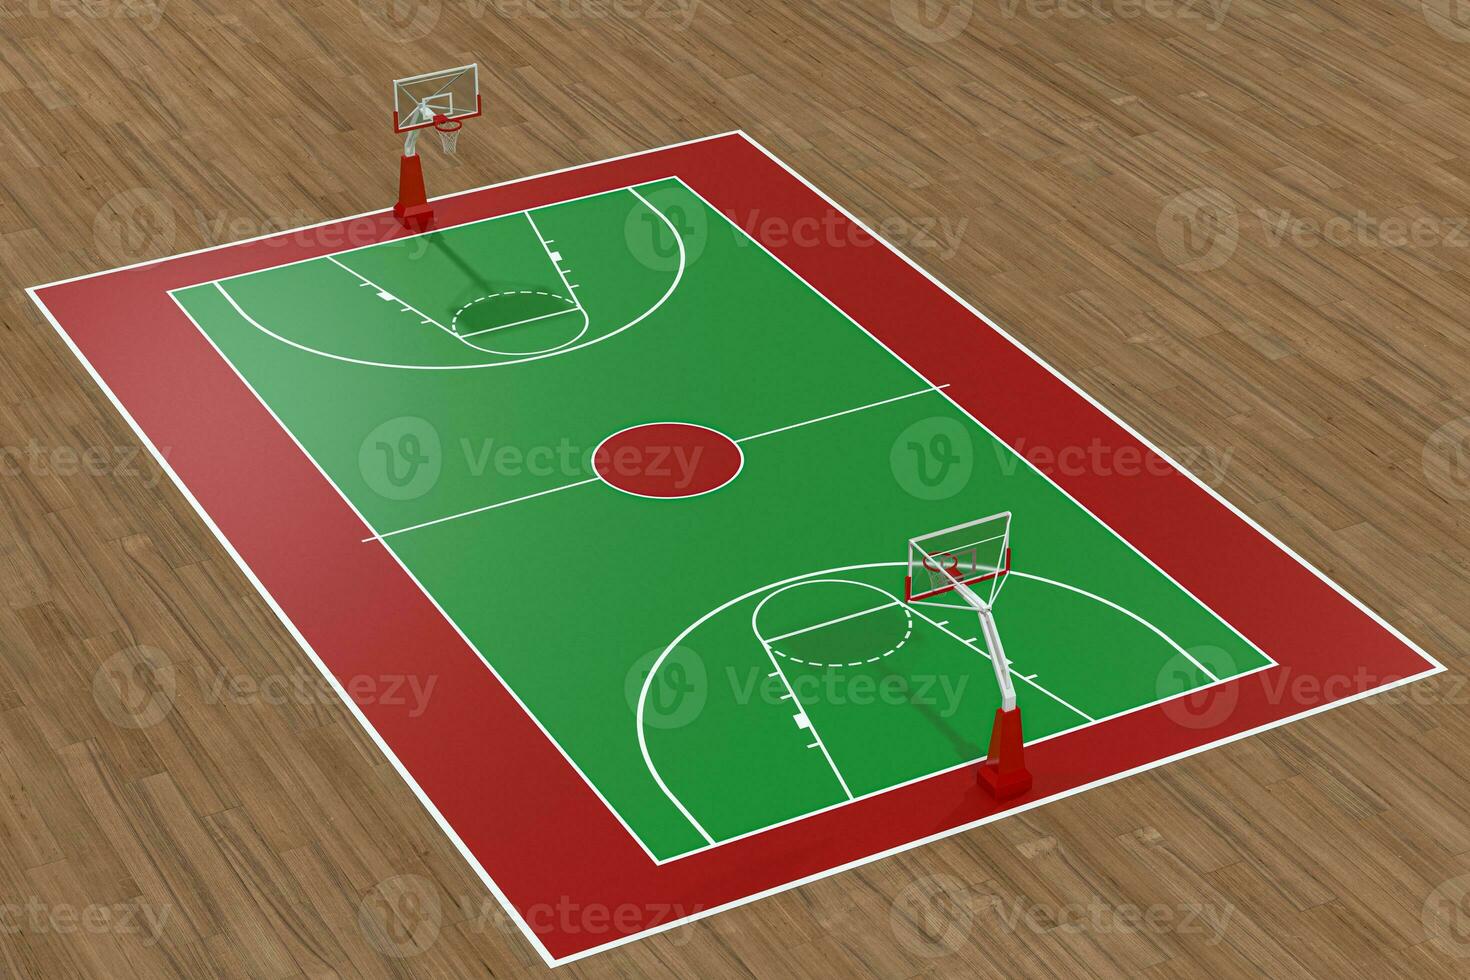 pallacanestro Tribunale con di legno pavimento, 3d resa. foto